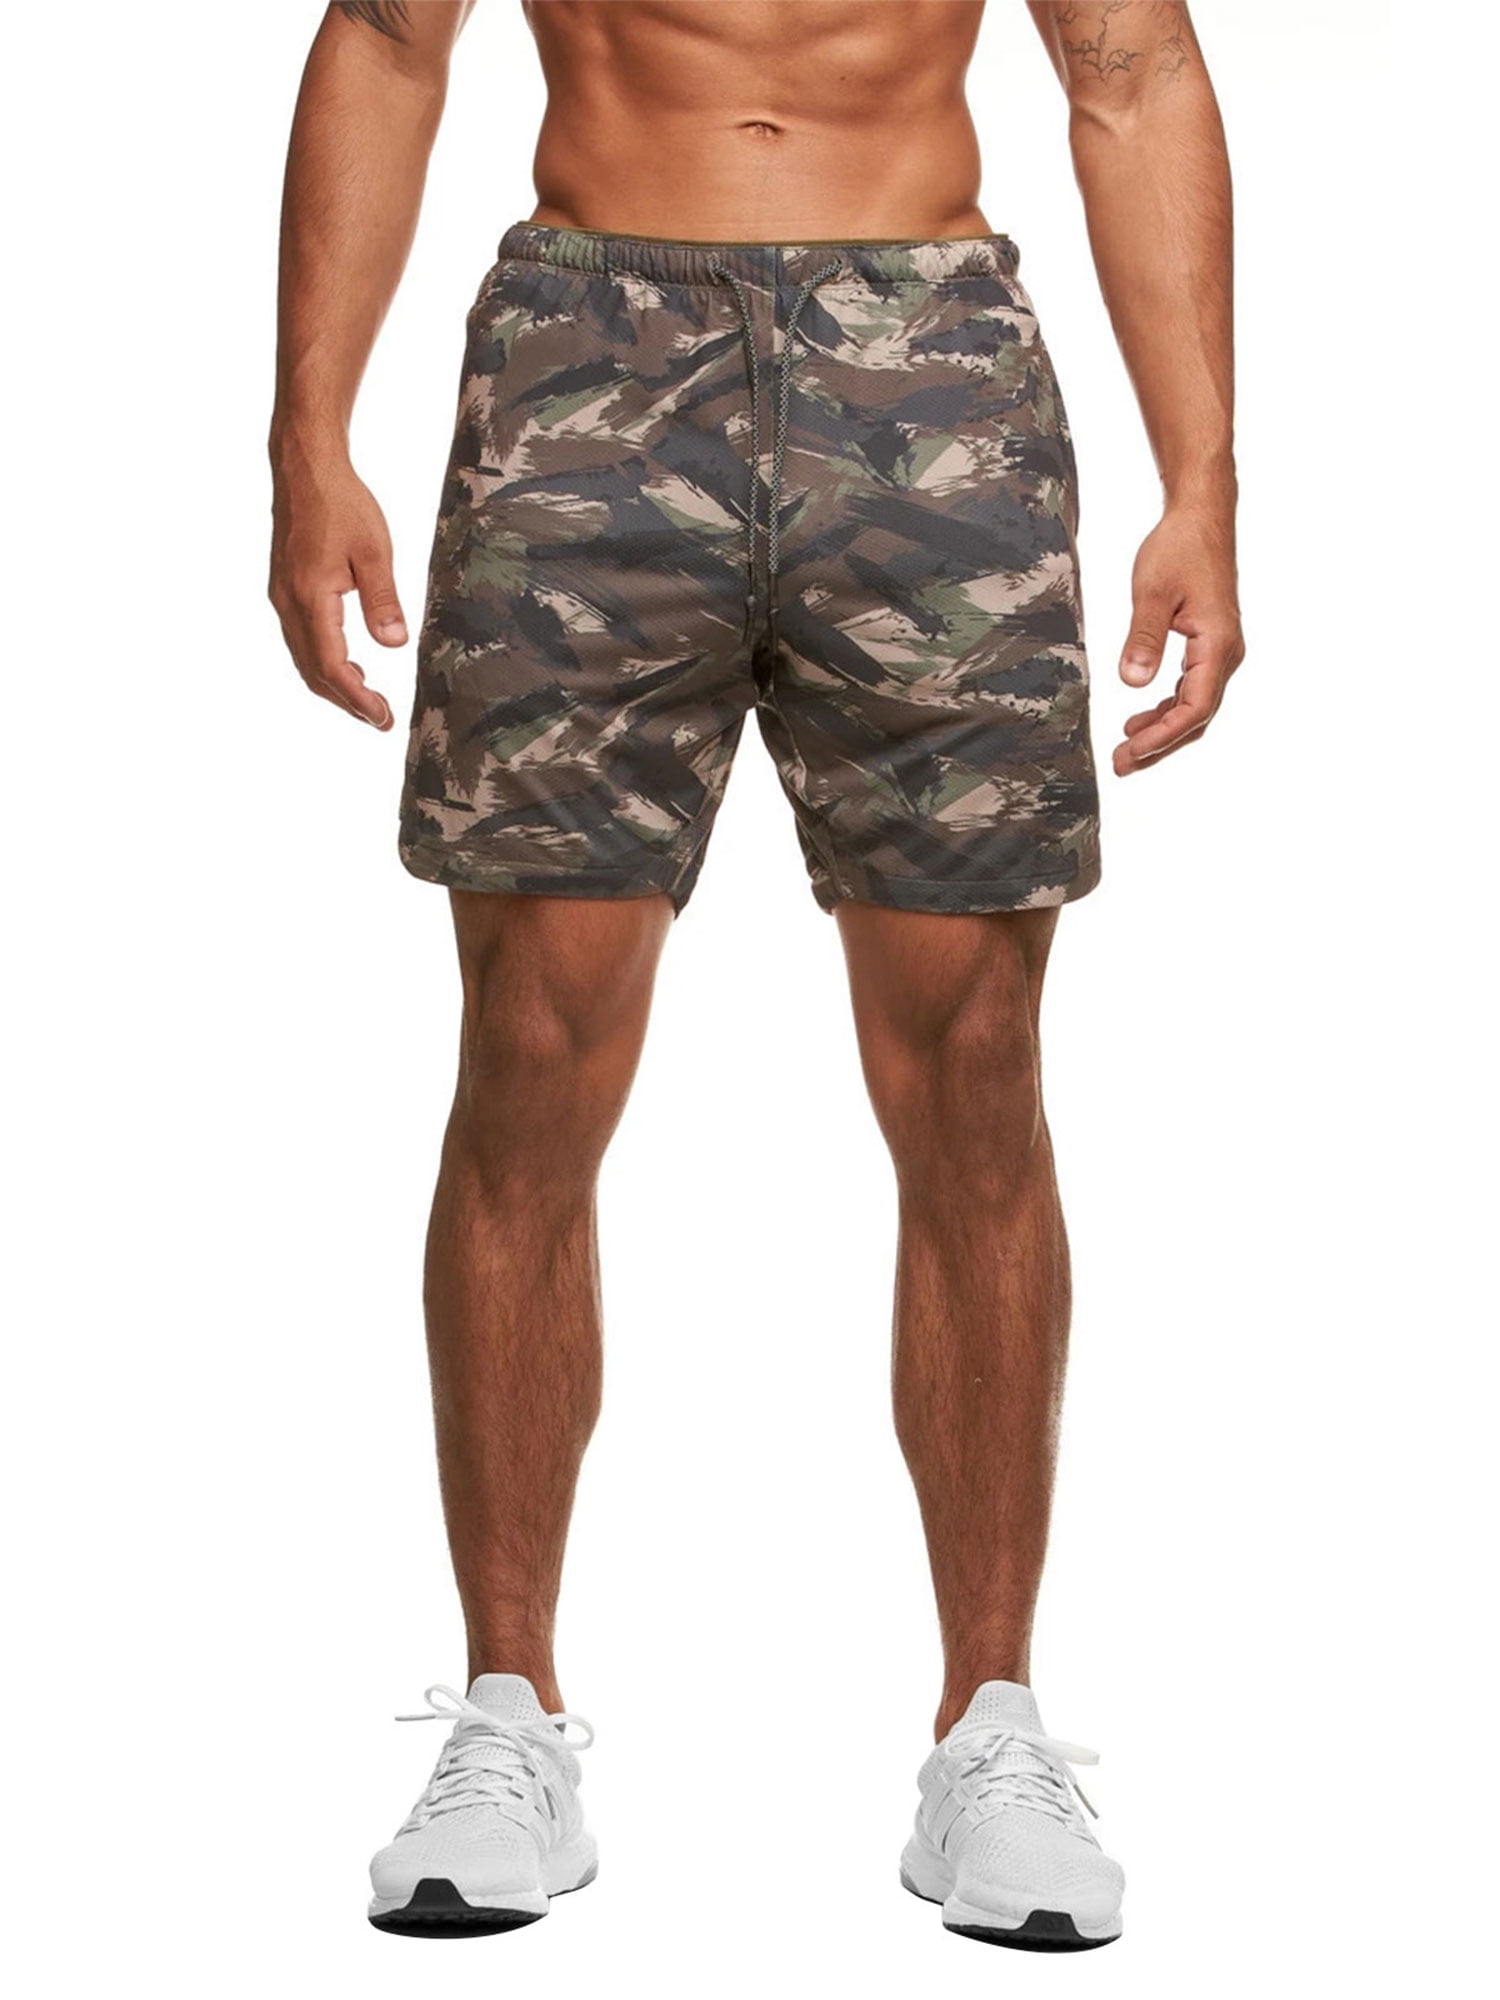 OTW Mens Basic Drawstring Workout Elastic Waist Camouflage Print Shorts